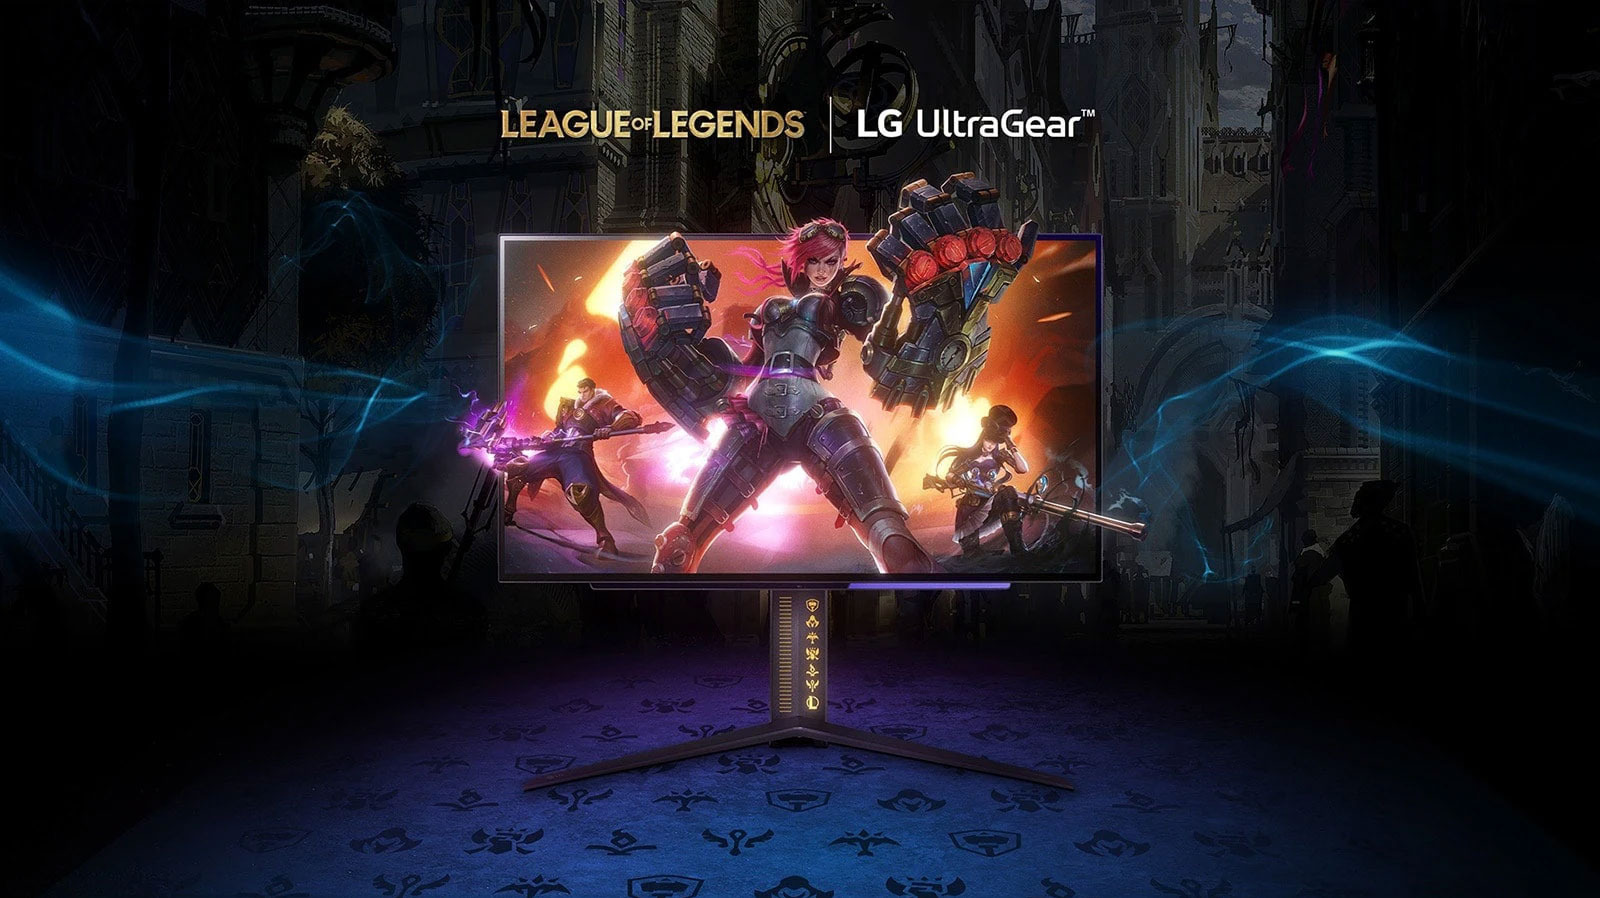 lg-presenta-il-monitor-da-gioco-ultragear-“league-of-legends”-in-edizione-limitata